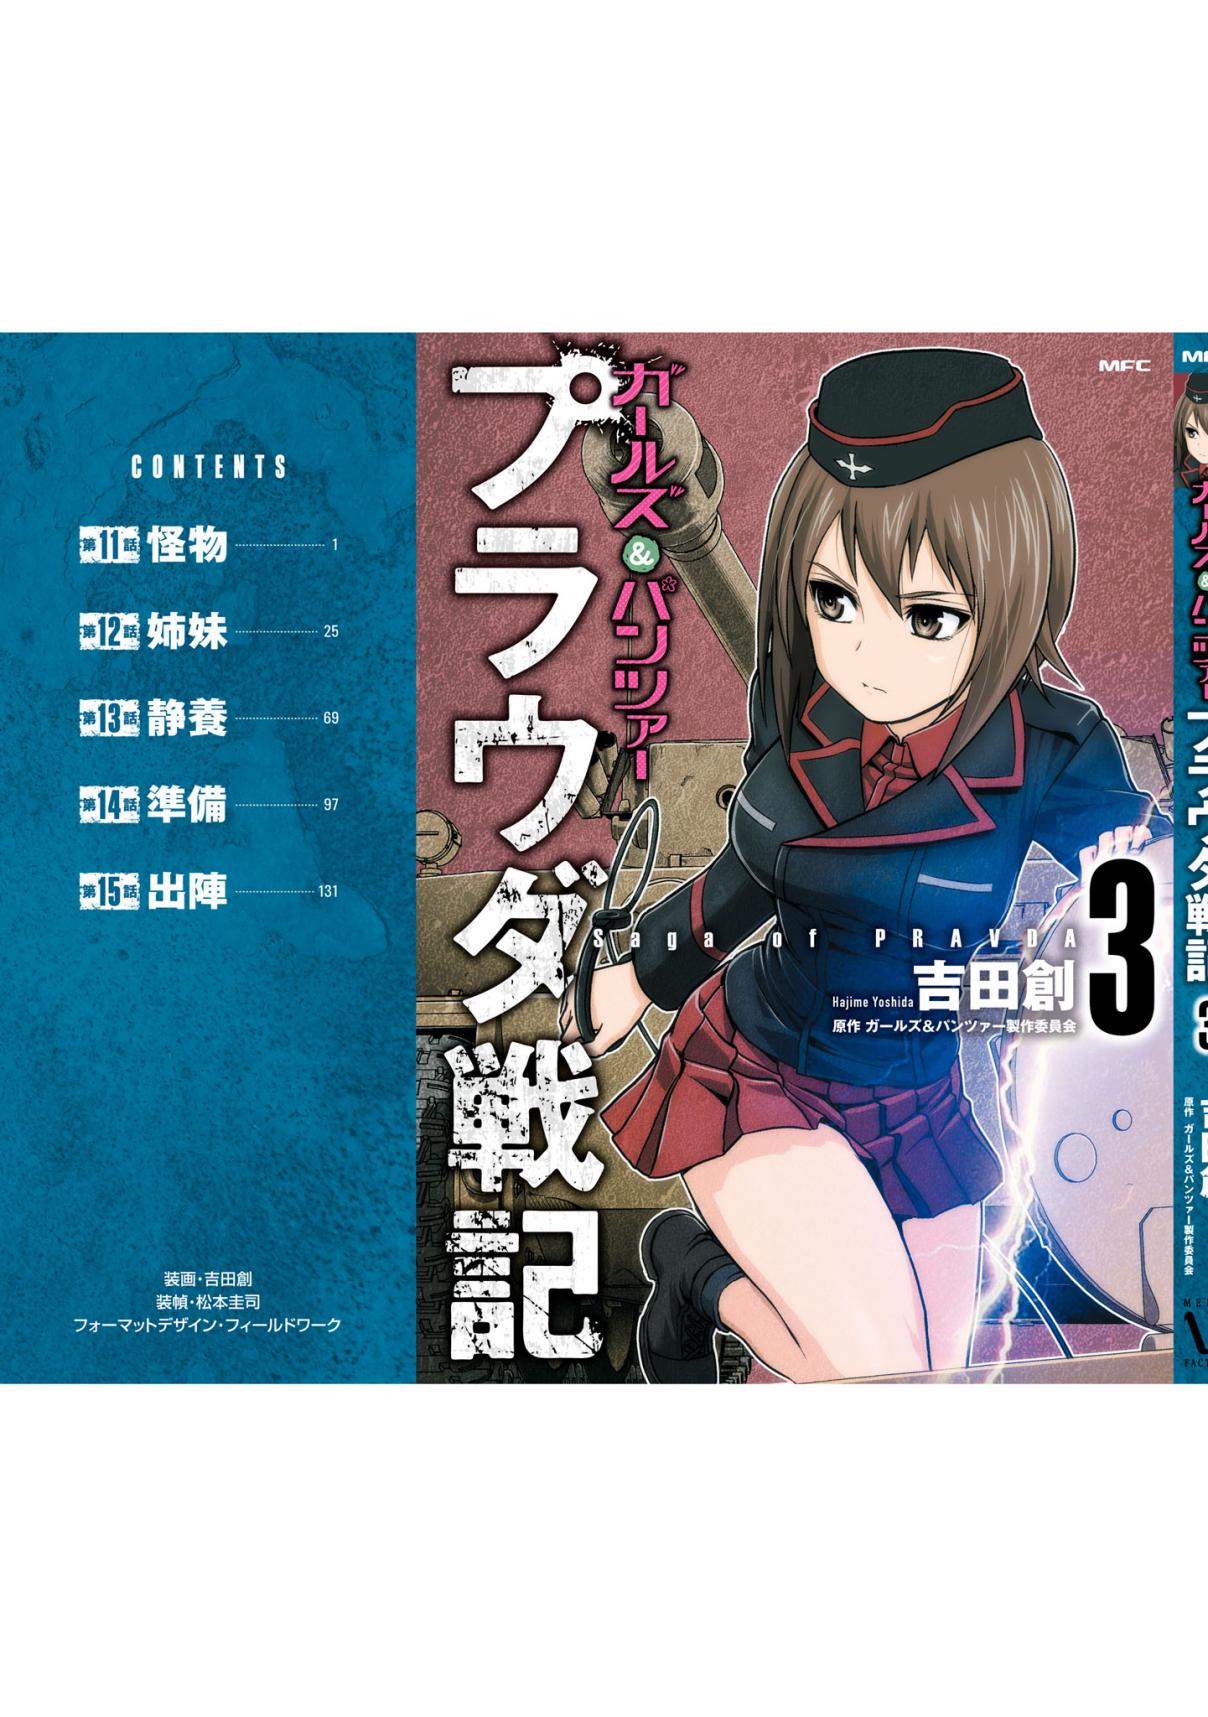 Girls und Panzer Saga of Pravda Vol. 3 Ch. 15.5 Volume 3 Extras